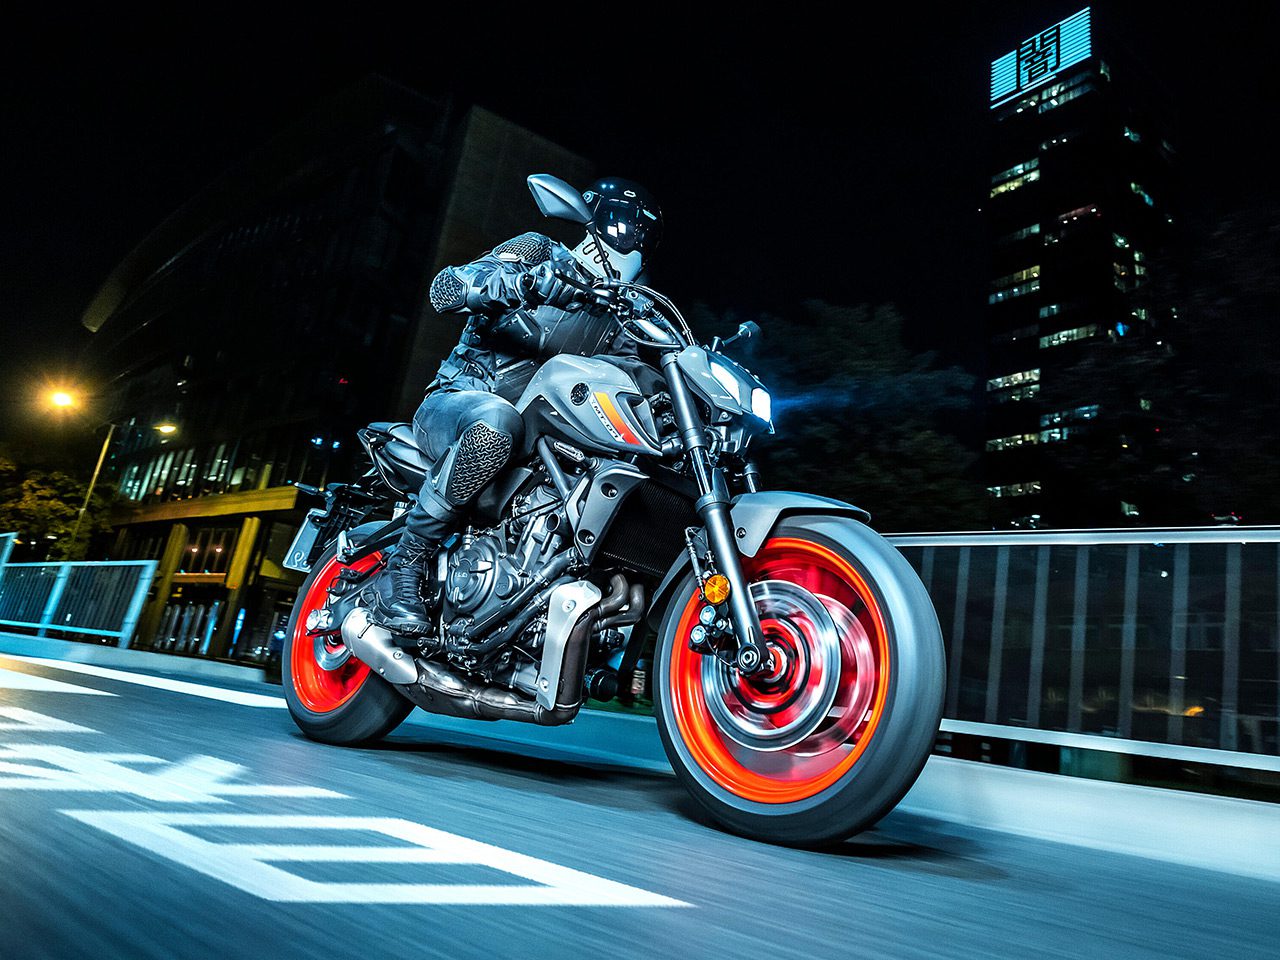 Yamaha MT07 riding at night in Tokyo